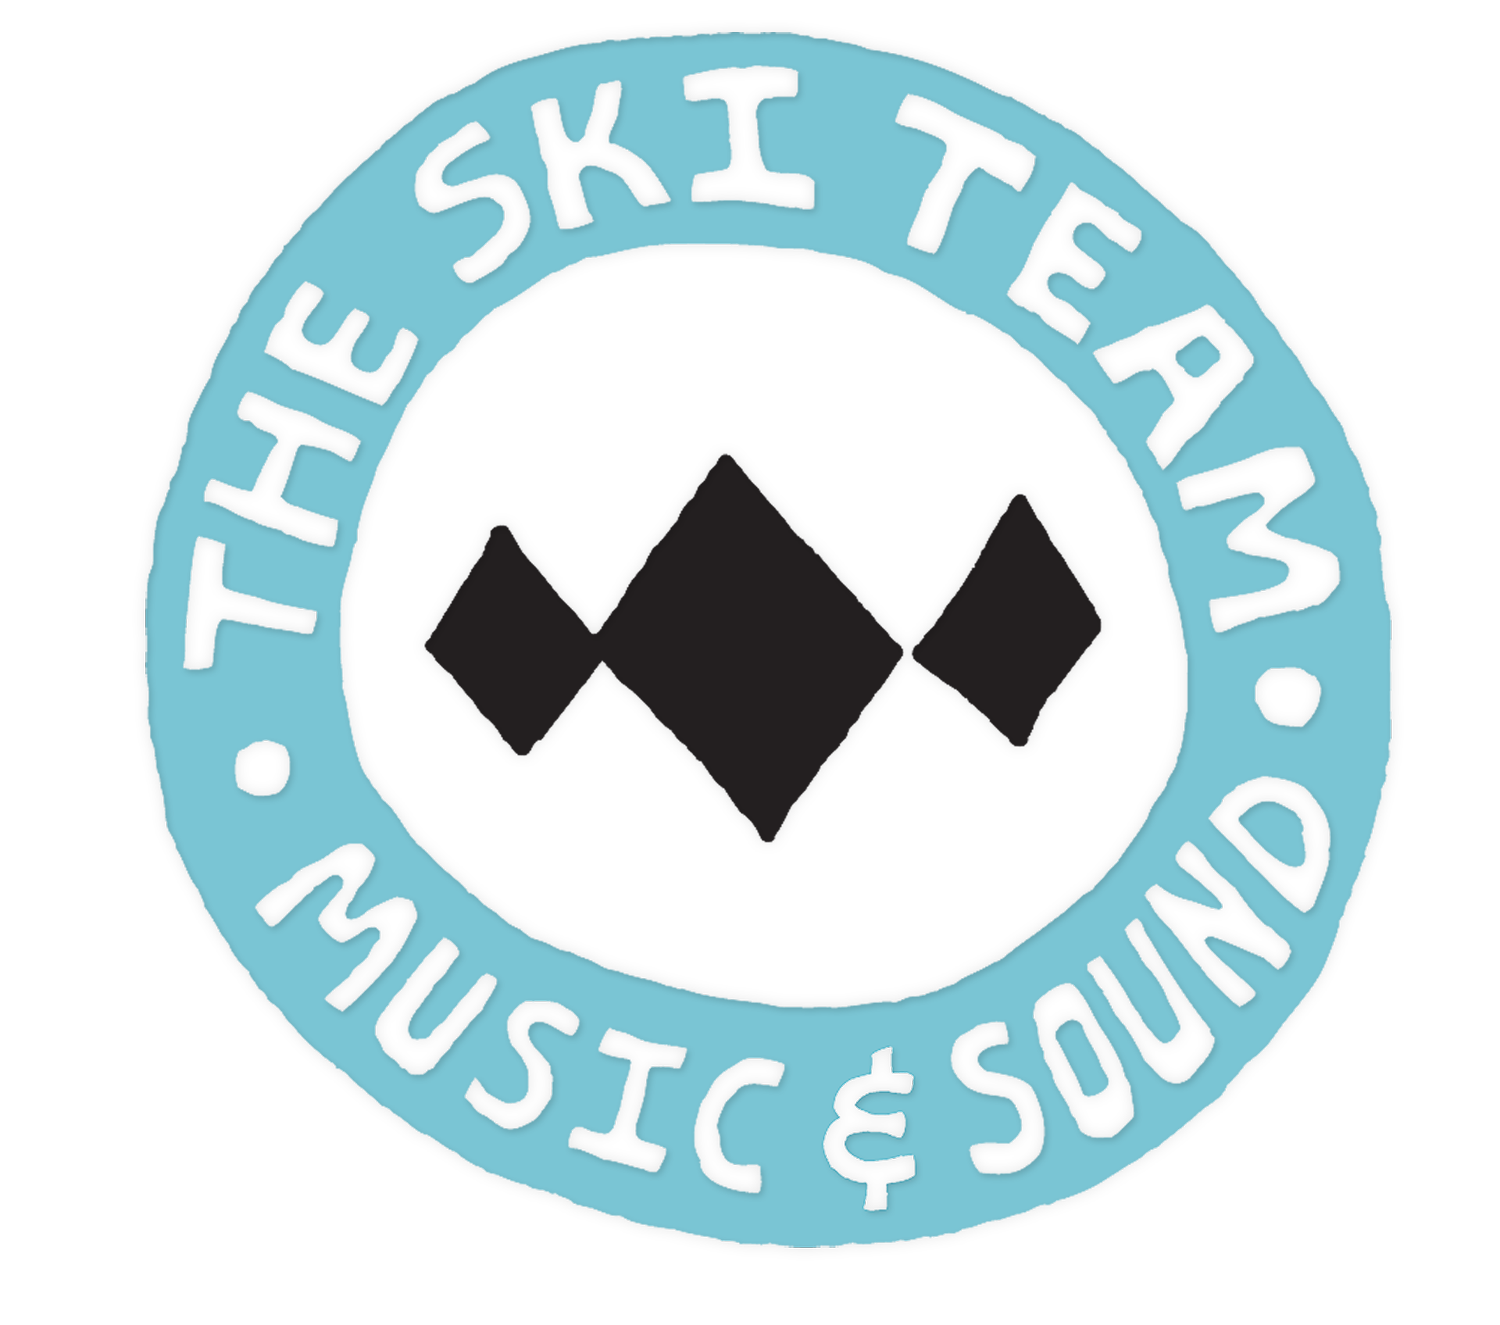 The Ski Team